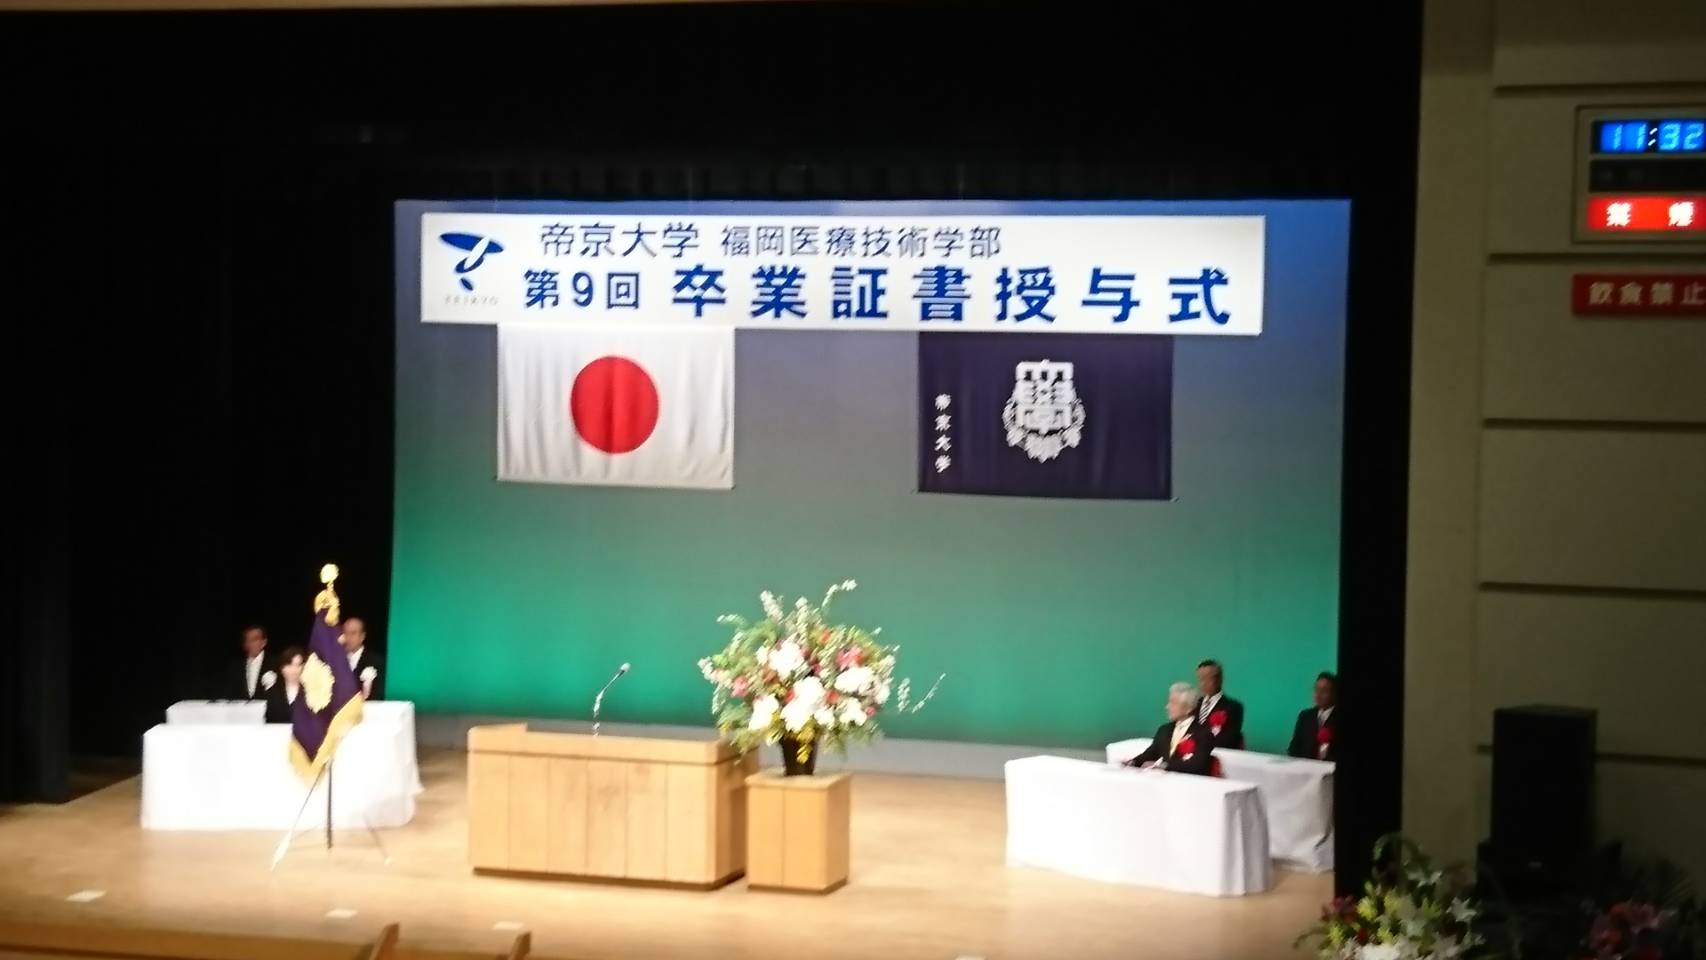 【報告】帝京大学福岡医療技術学部第9回卒業証書授与式出席 大牟田青年会議所